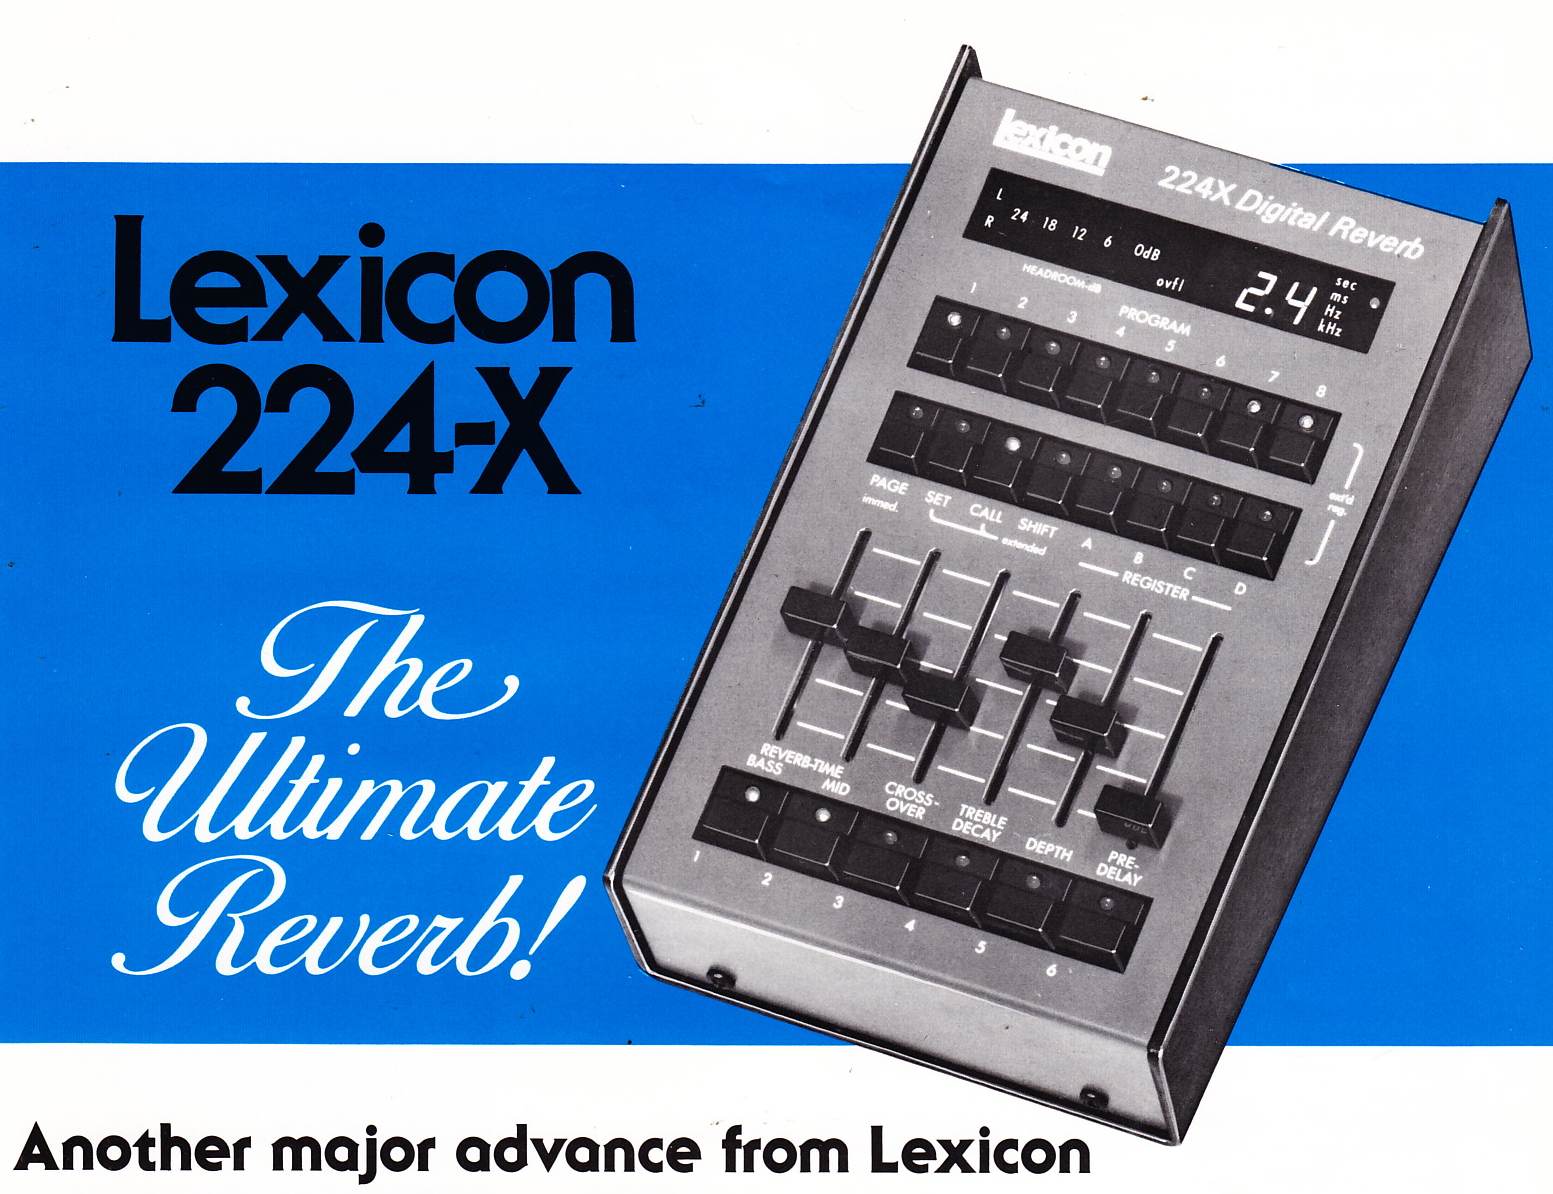 Lexicon_224x.jpg